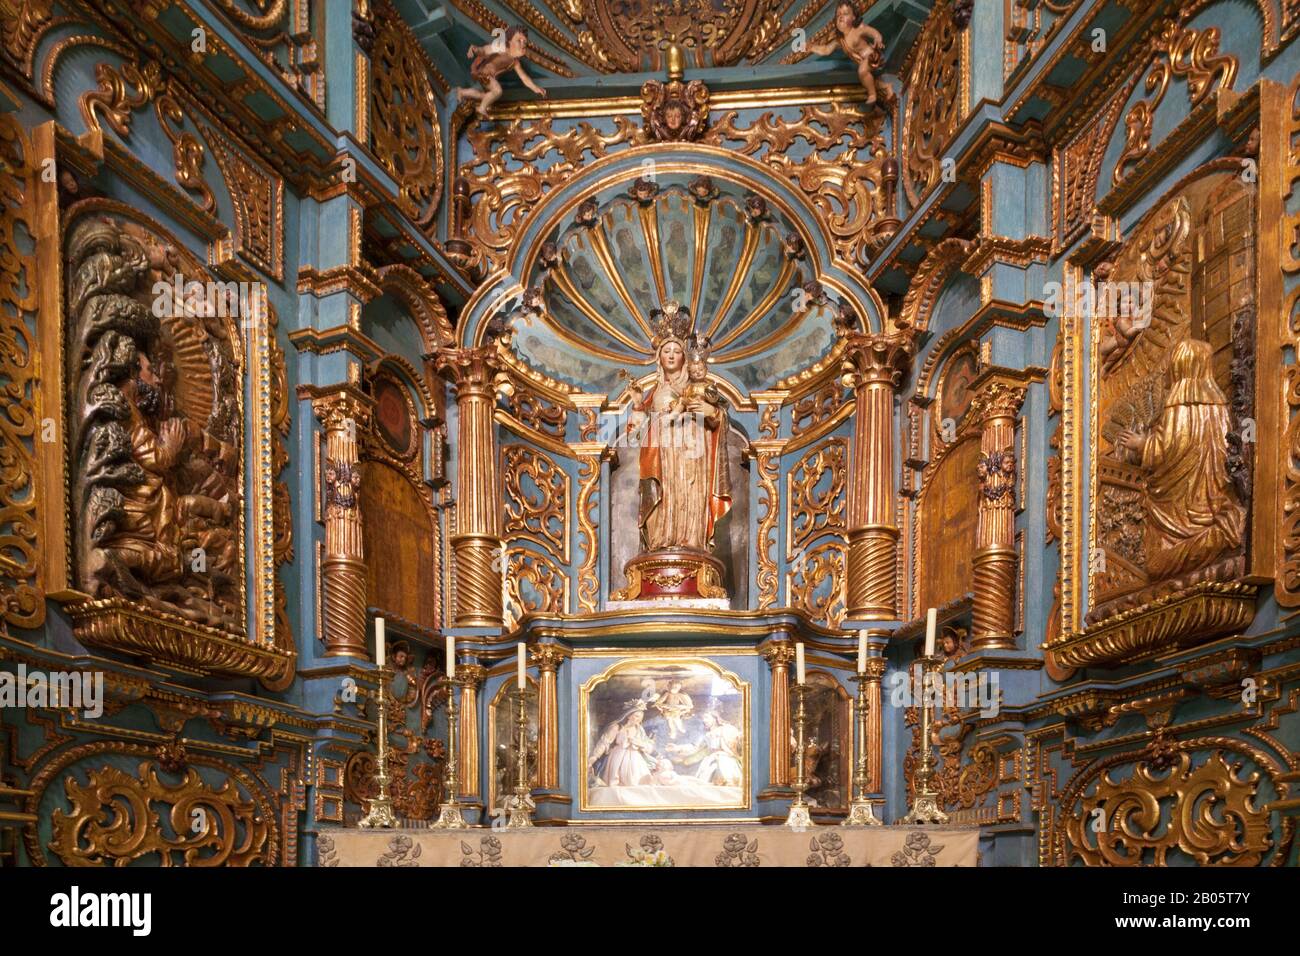 La Capilla de estilo barroco y de la Virgen de la Evangelización es una de las capillas laterales de la Basílica Catedral de Lima. Foto de stock